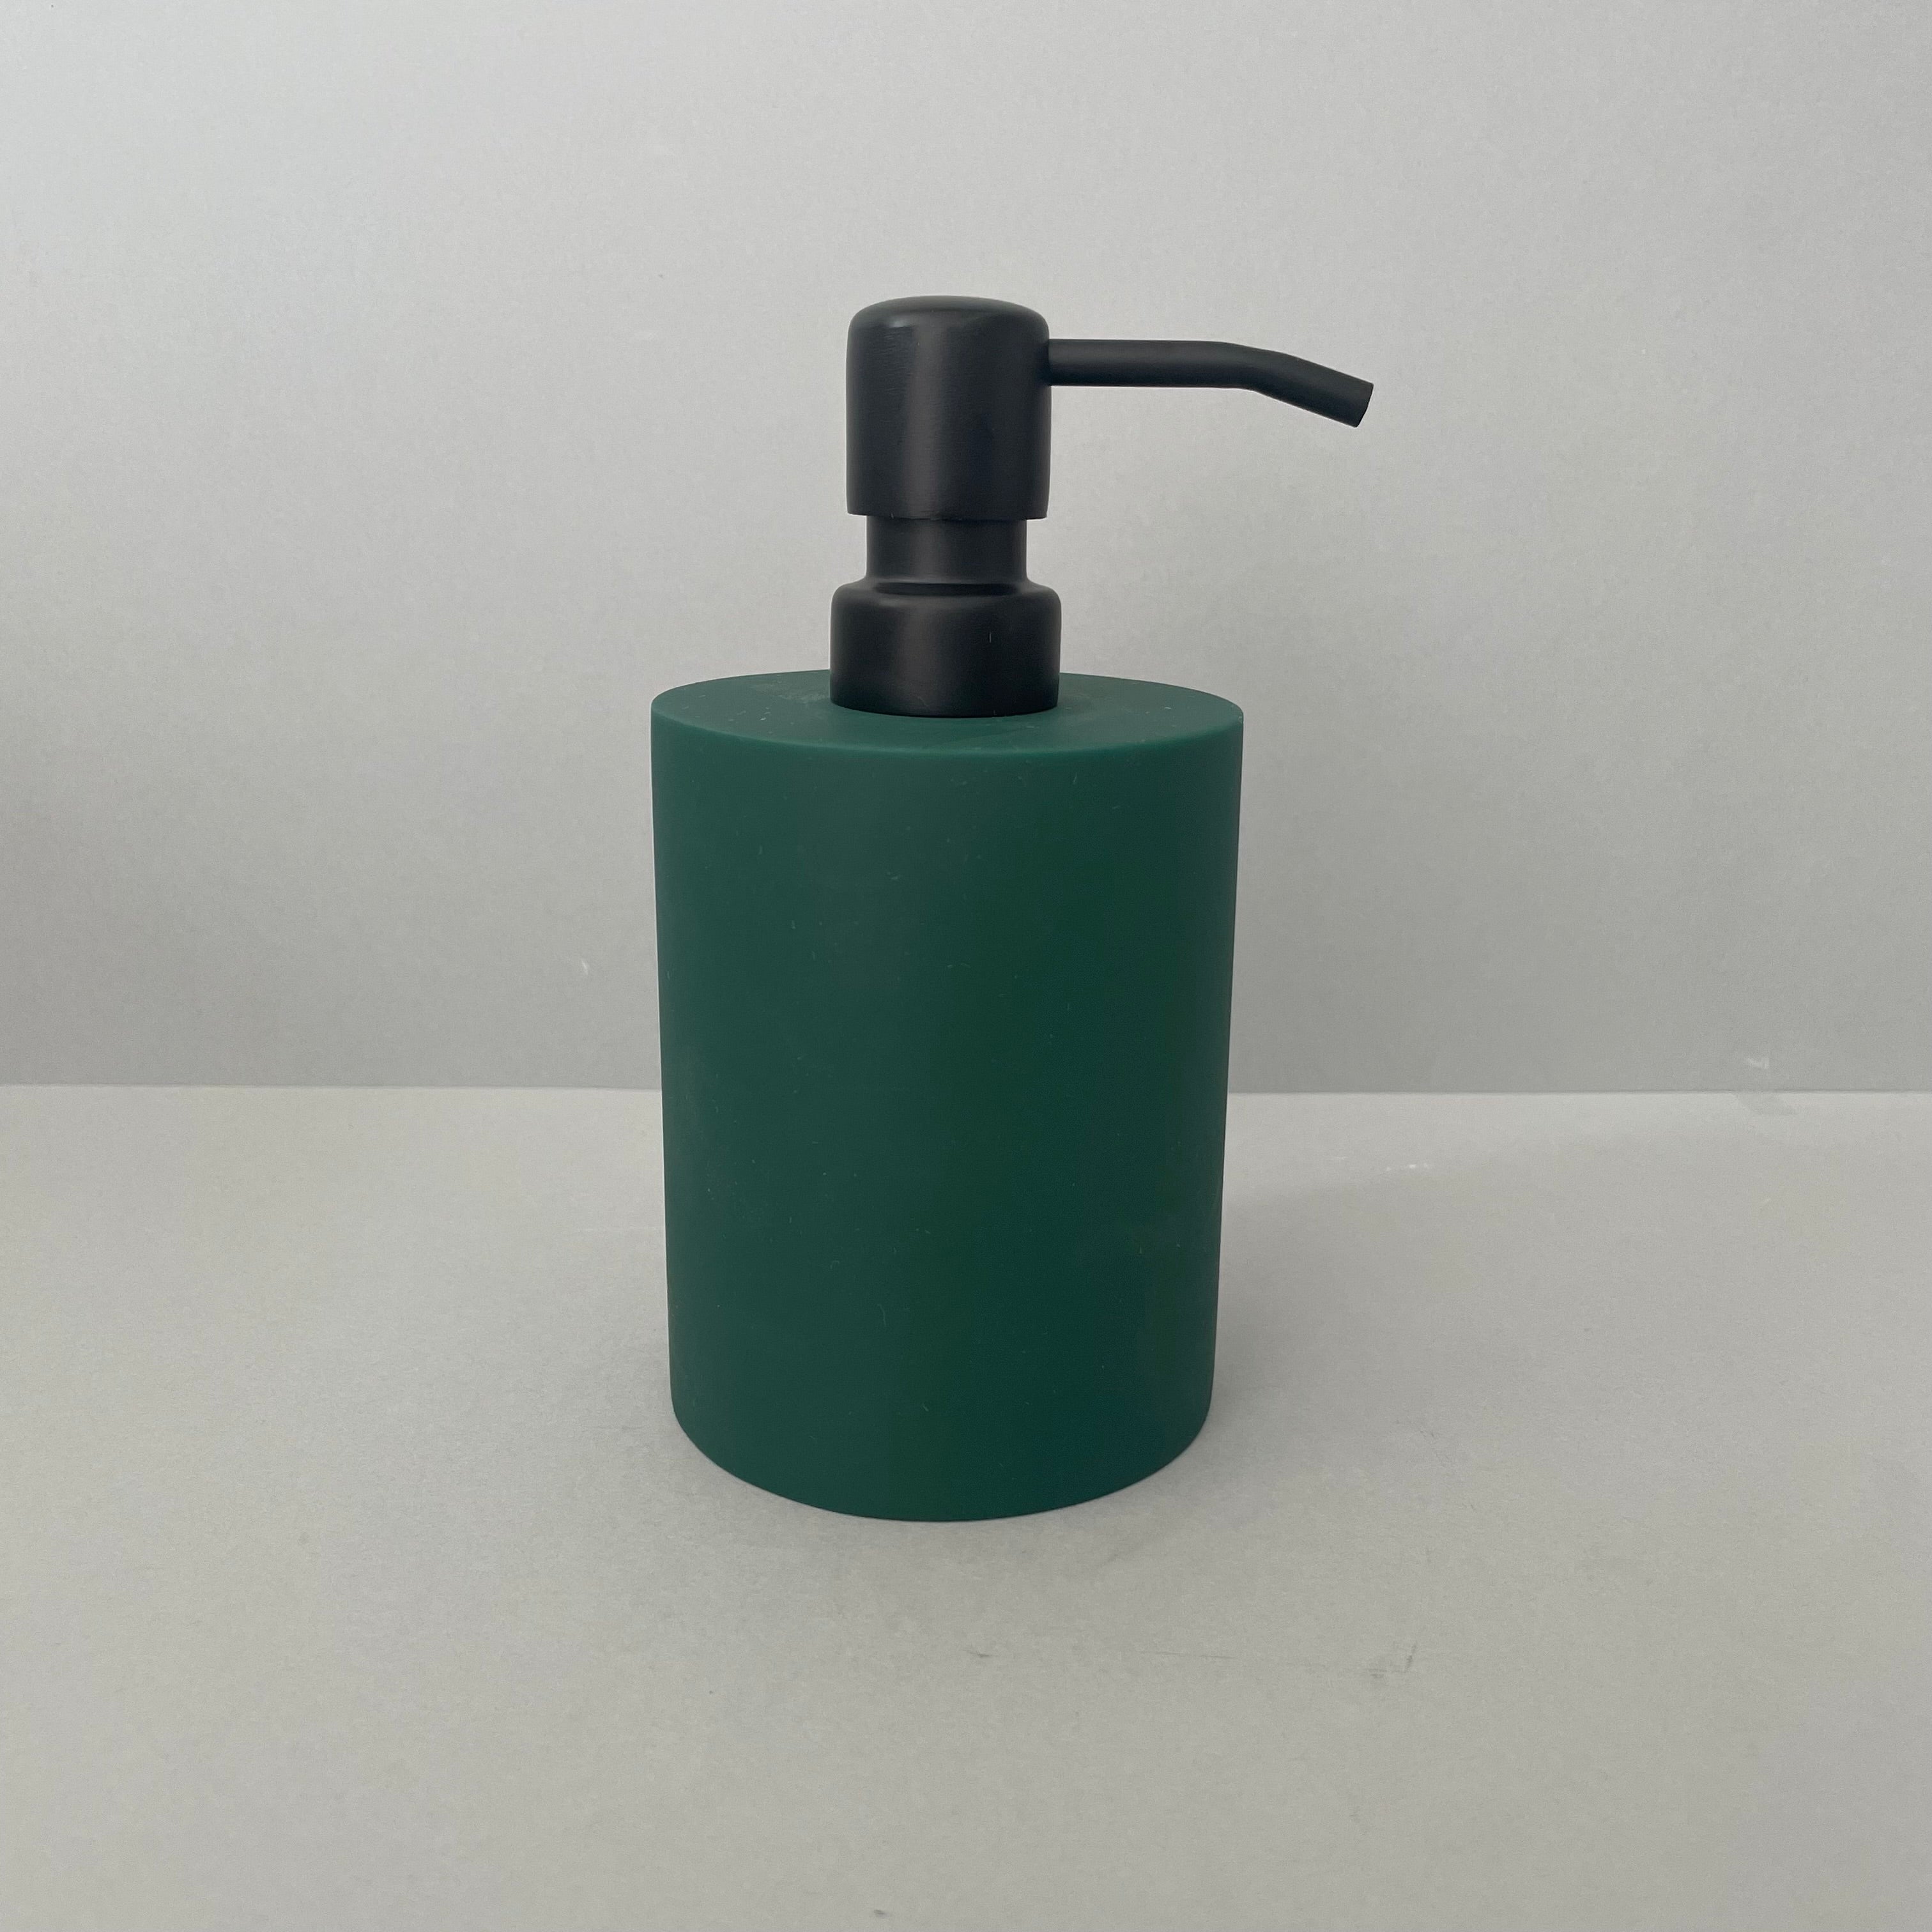 Green Resin Soap Dispenser